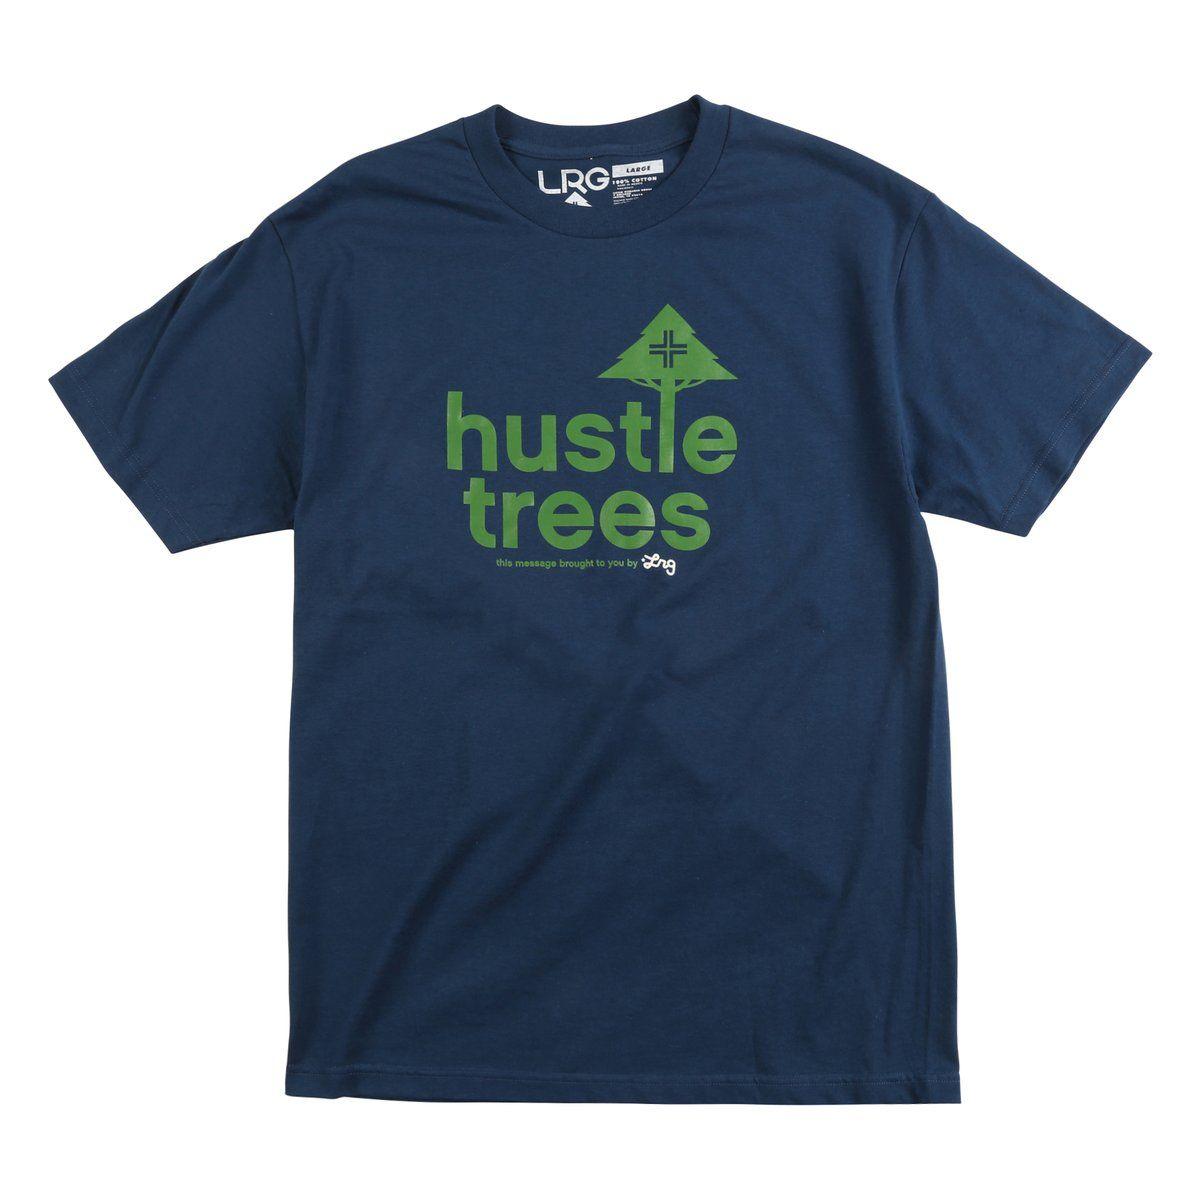 LRG Hustle Trees Logo - LRG Hustle Trees Tee | LRG Clothing